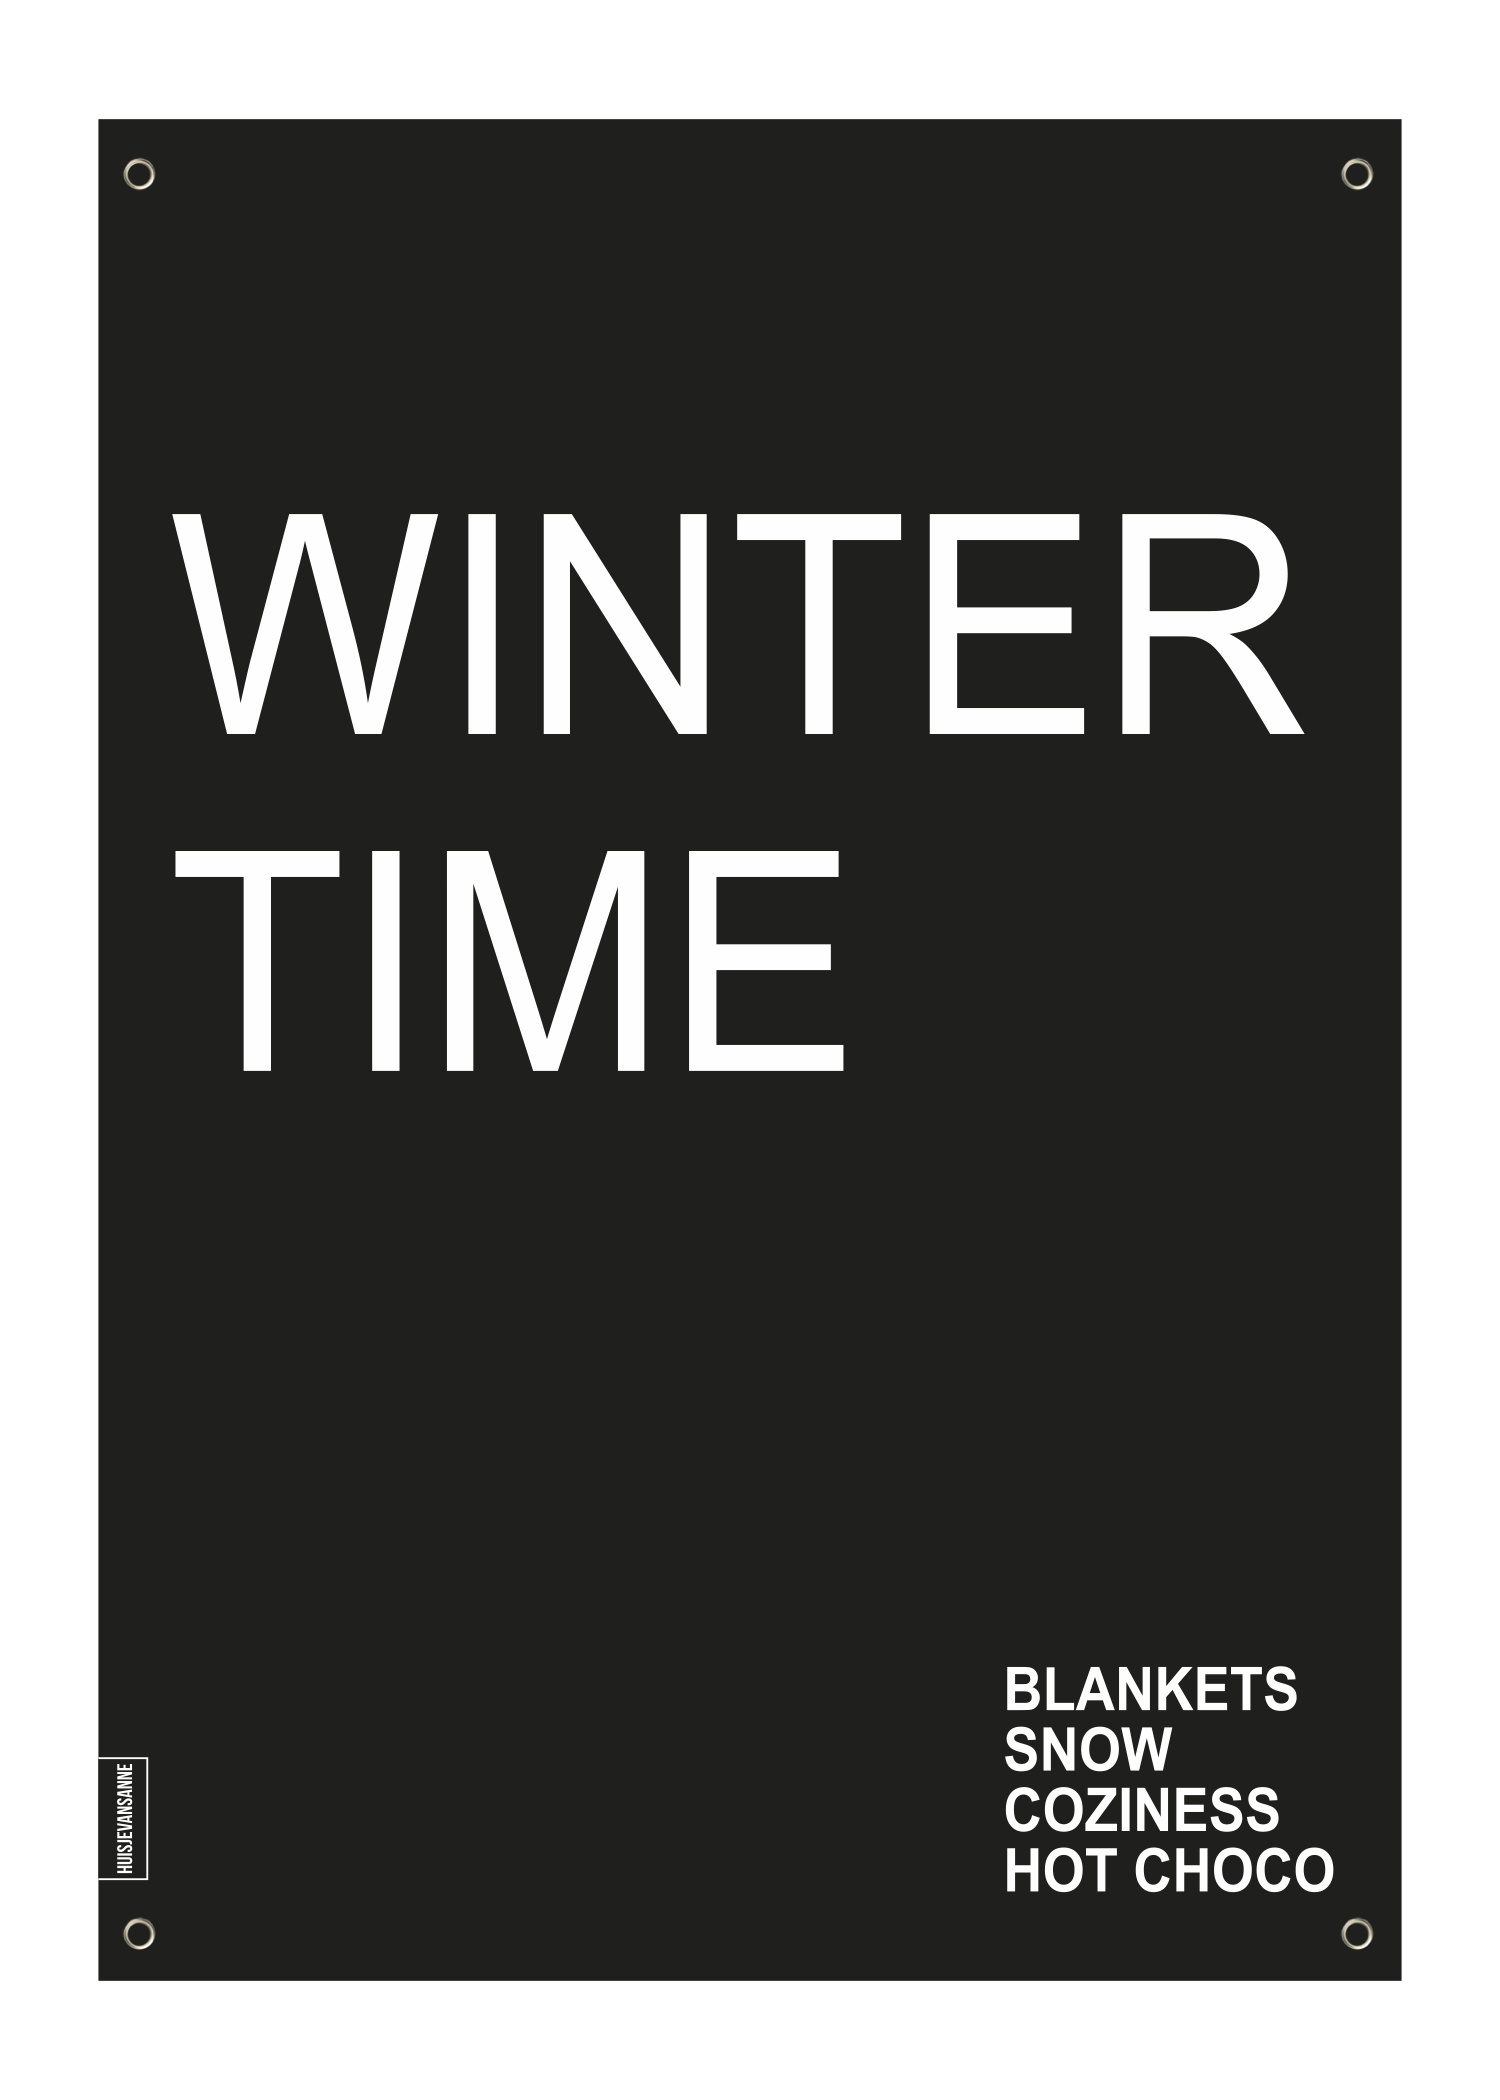 huisje van sanne tuinposter zwart wit met tekst winter time